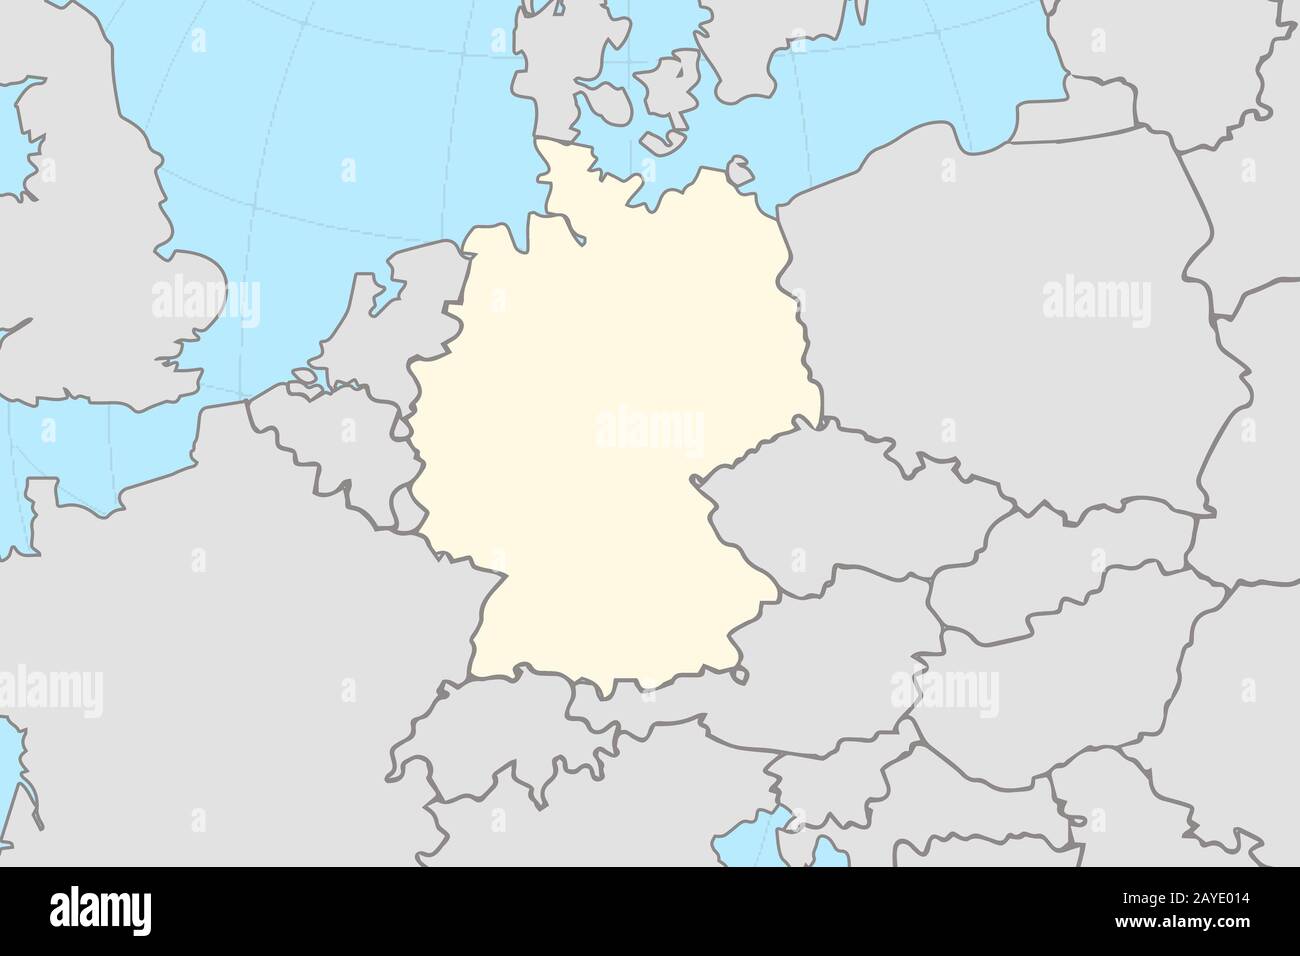 Teil der europäischen Weltkarte mit Deutschlandkarte, die das gelb unterlegte Land mit dem Rest der Europäischen Union grau zeigt Stockfoto